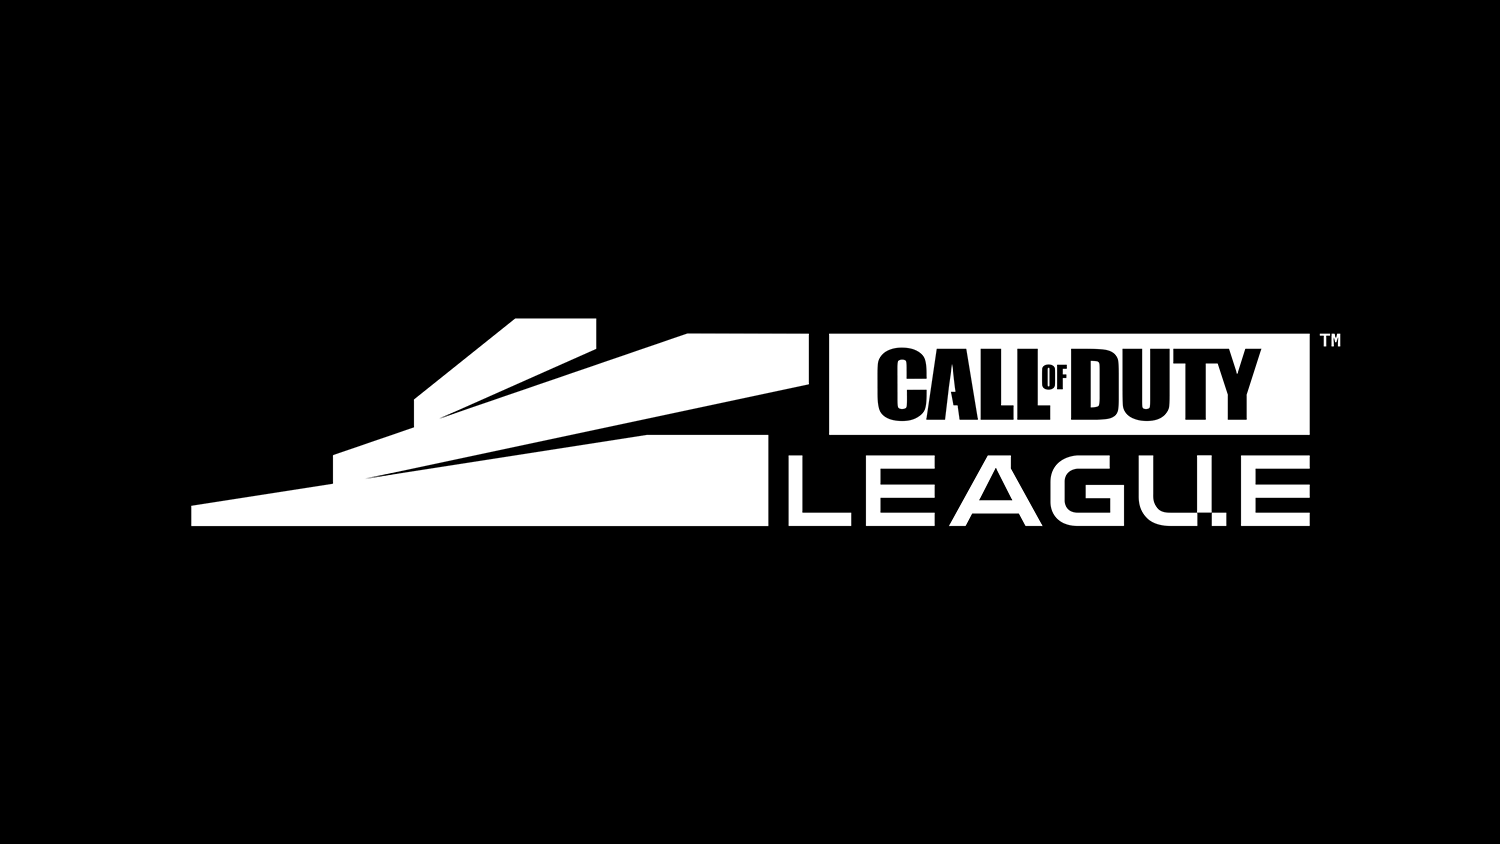 Call of Duty Challengers の 2022 年シーズンの全トーナメント スケジュールがリークされたと報告されています。